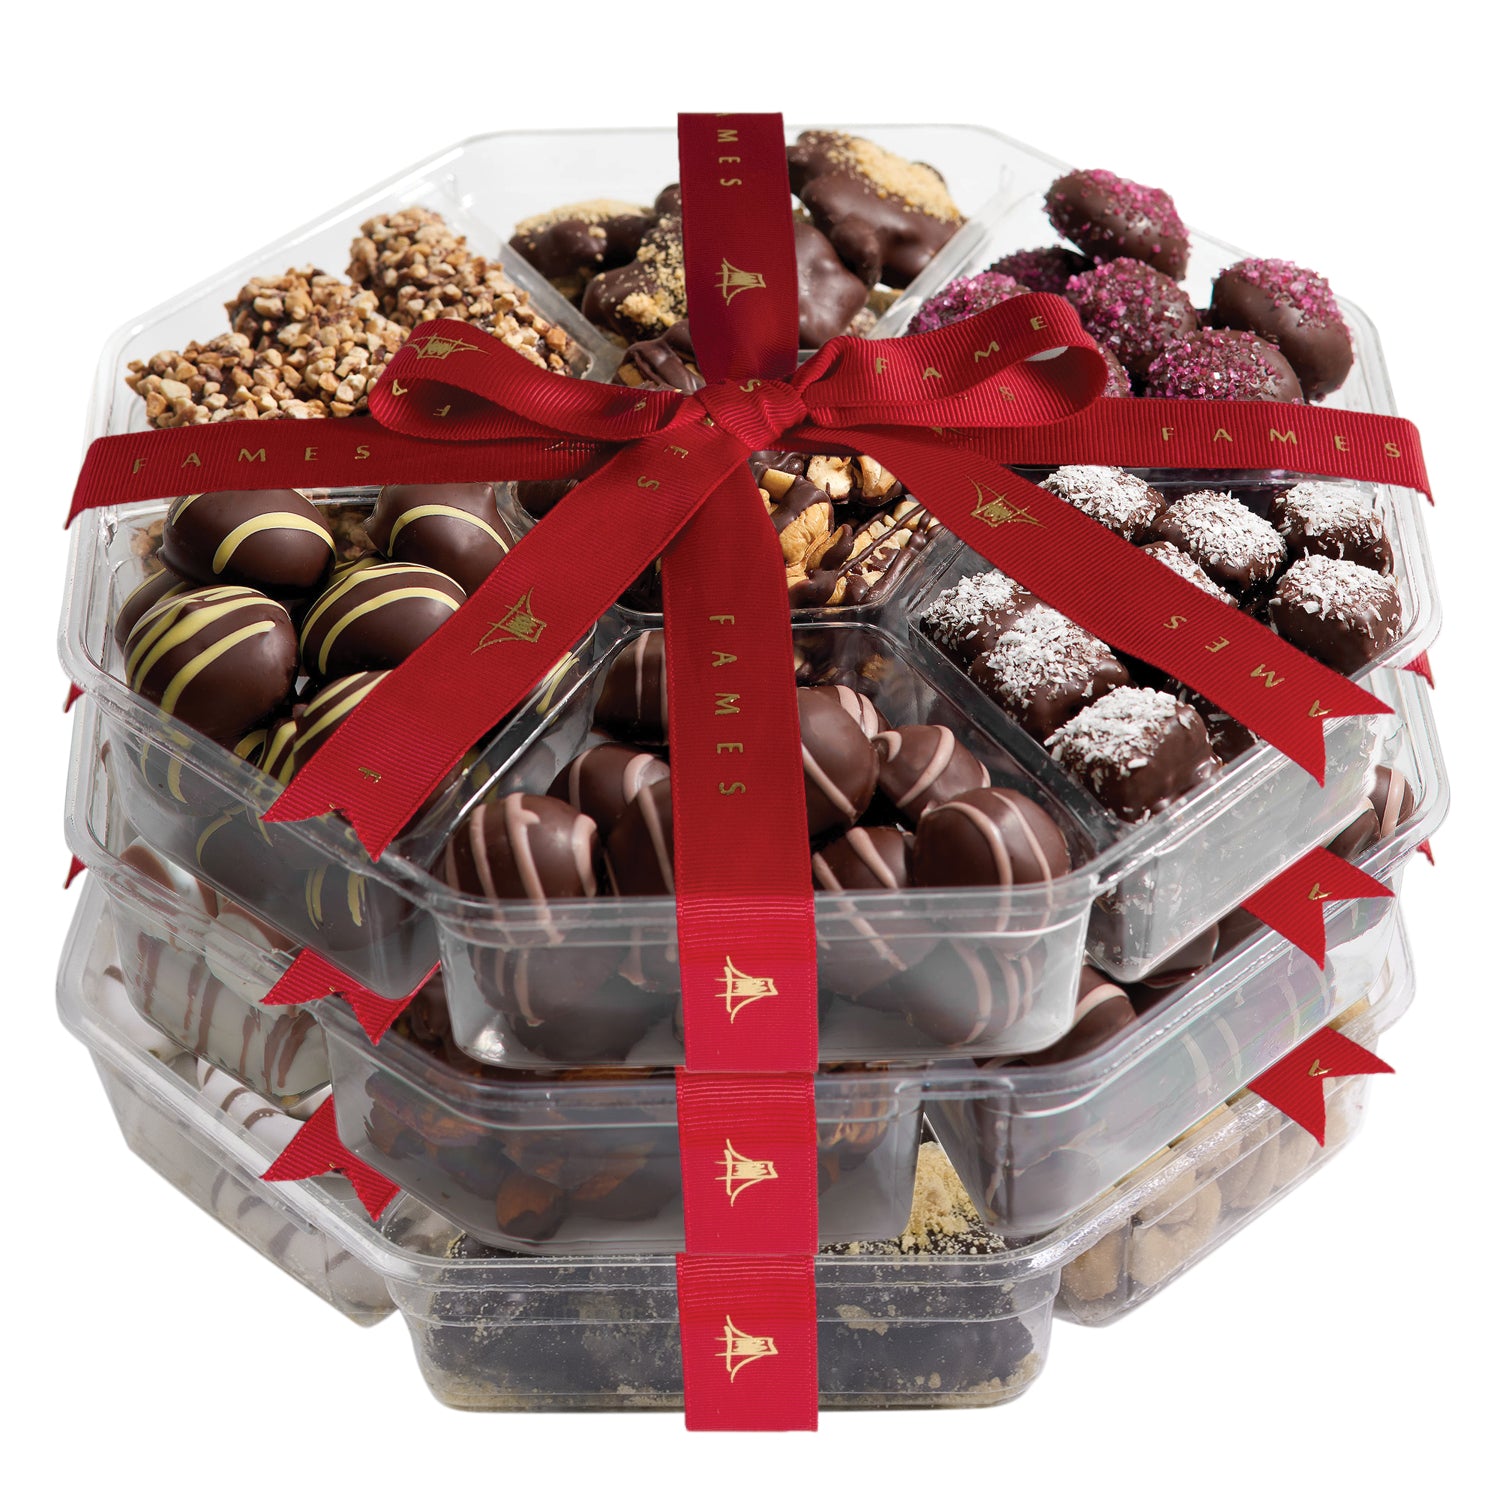 Artsian Chocolate Gift Set - Dairy Free, Kosher, Chocolate Gift.  Fames Chocolate   